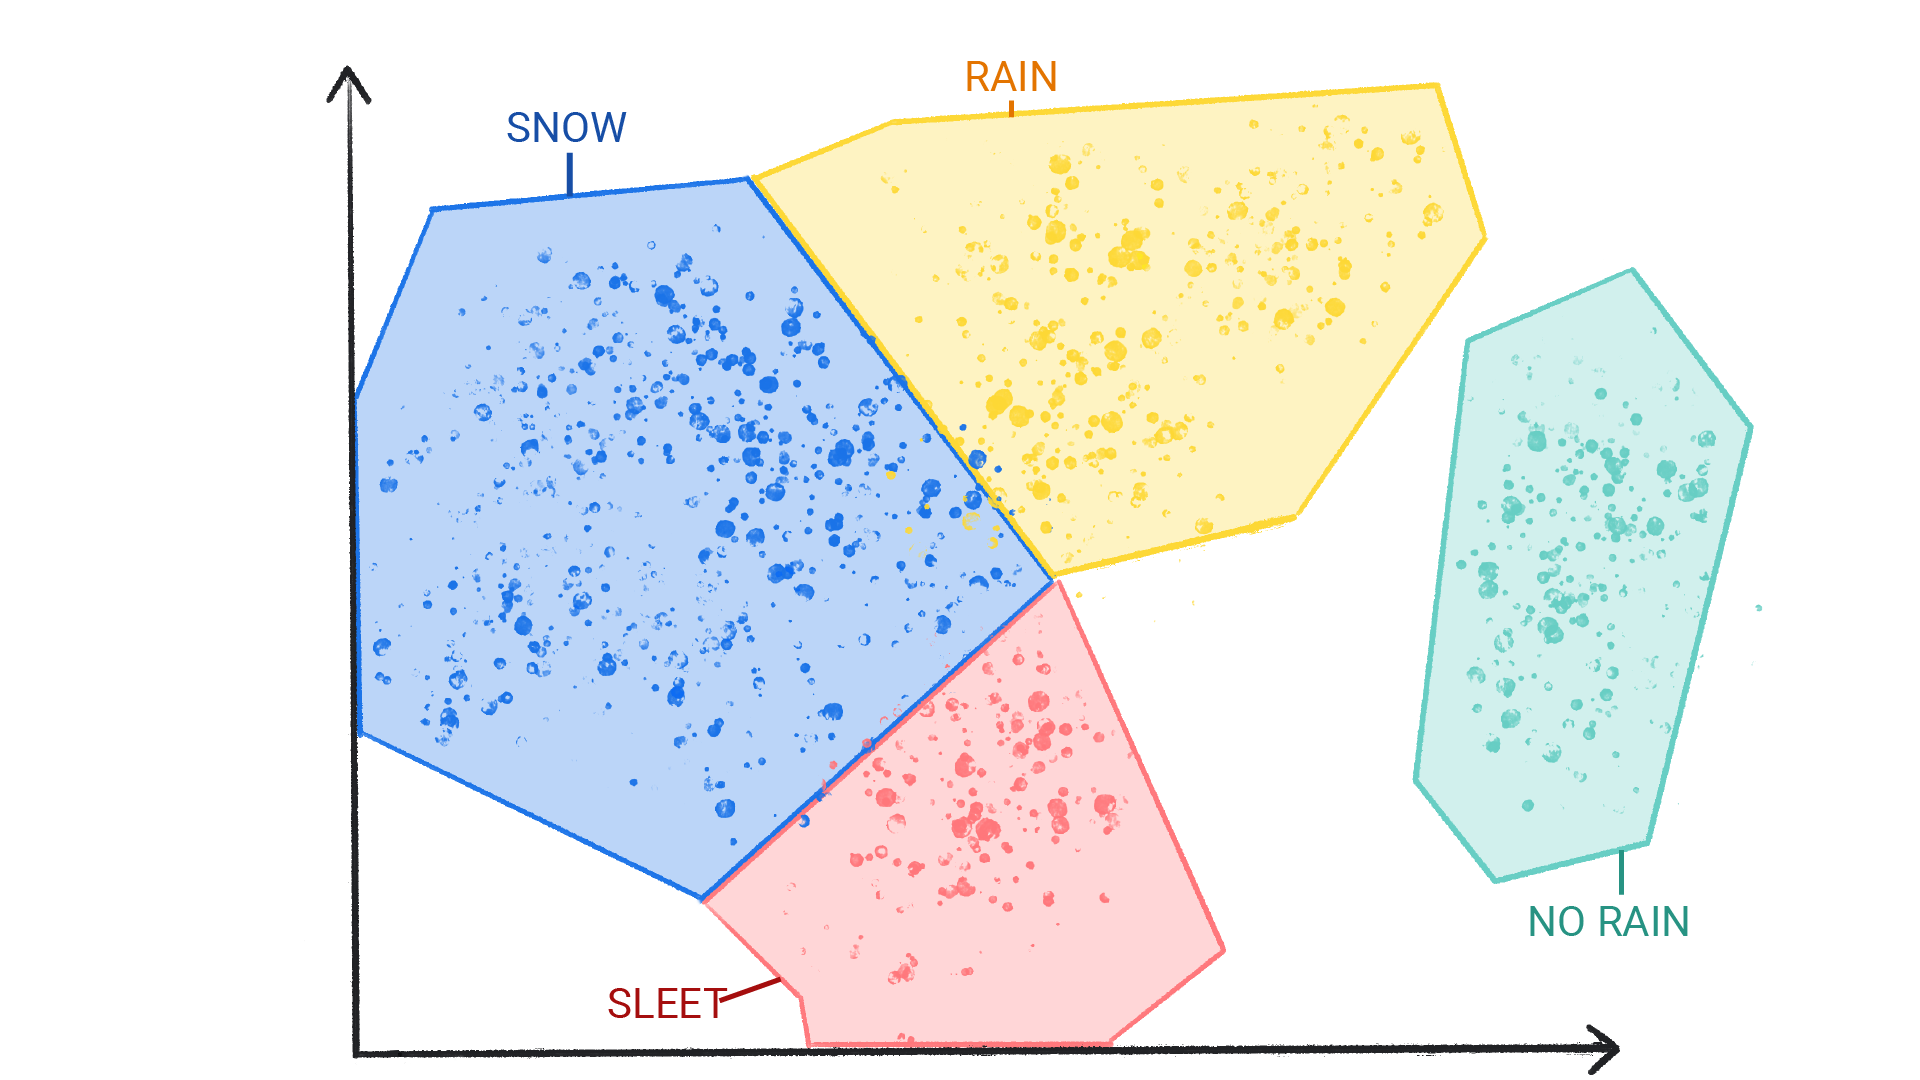 Obraz przedstawiający kolorowe kropki w klastrach oznaczonych jako śnieg, deszcz, grad, bez deszczu, które są zamknięte w jeden, graniczny kształt.